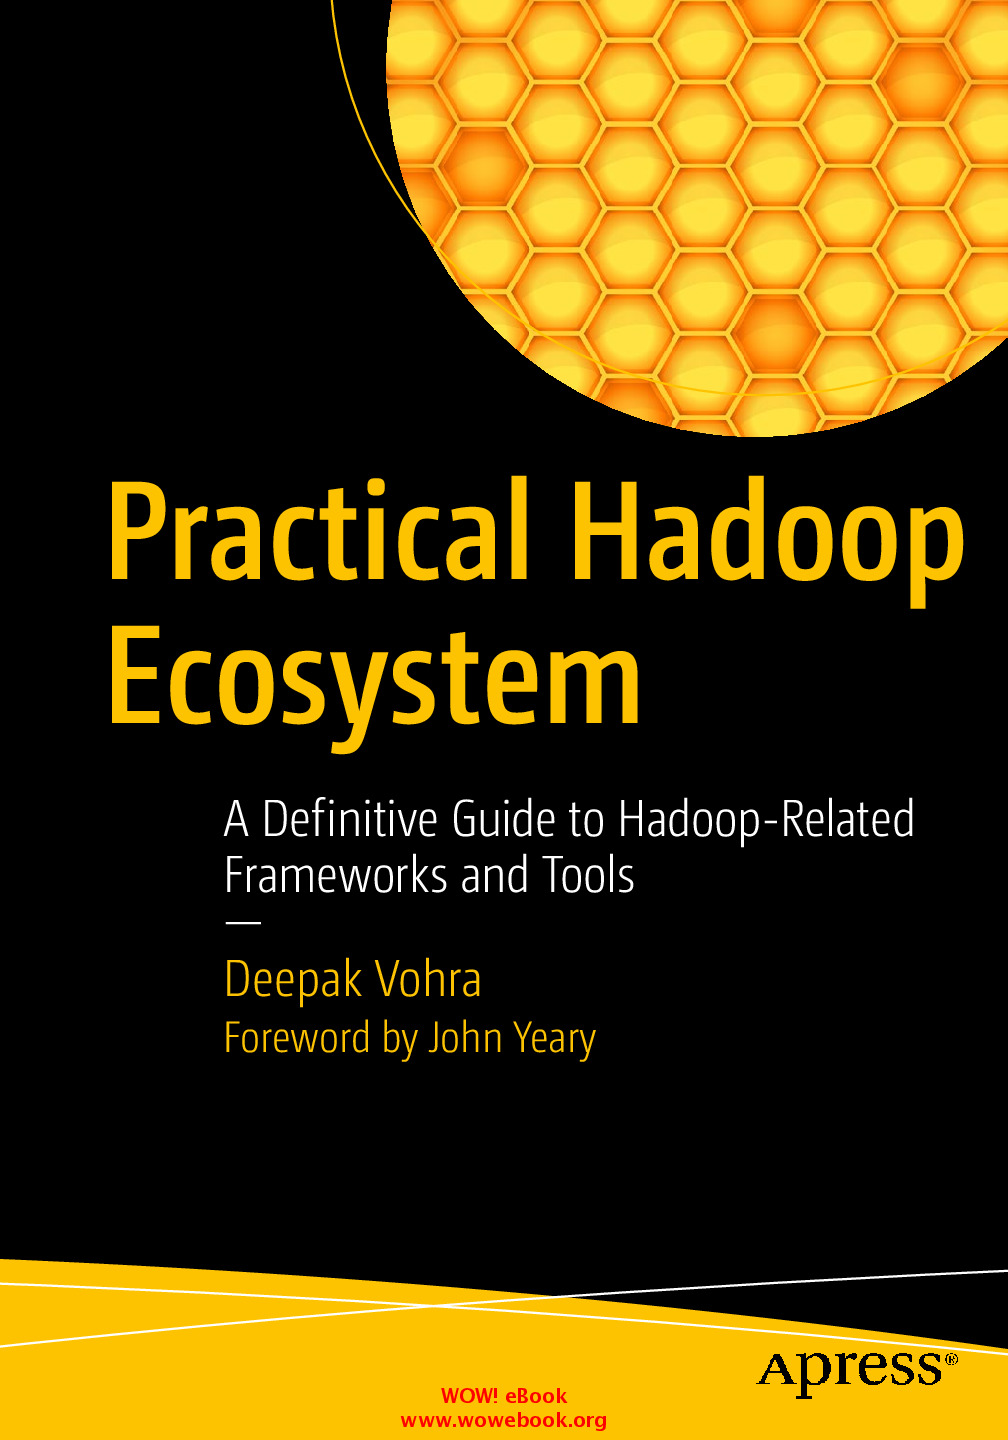 Practical Hadoop Ecosystem